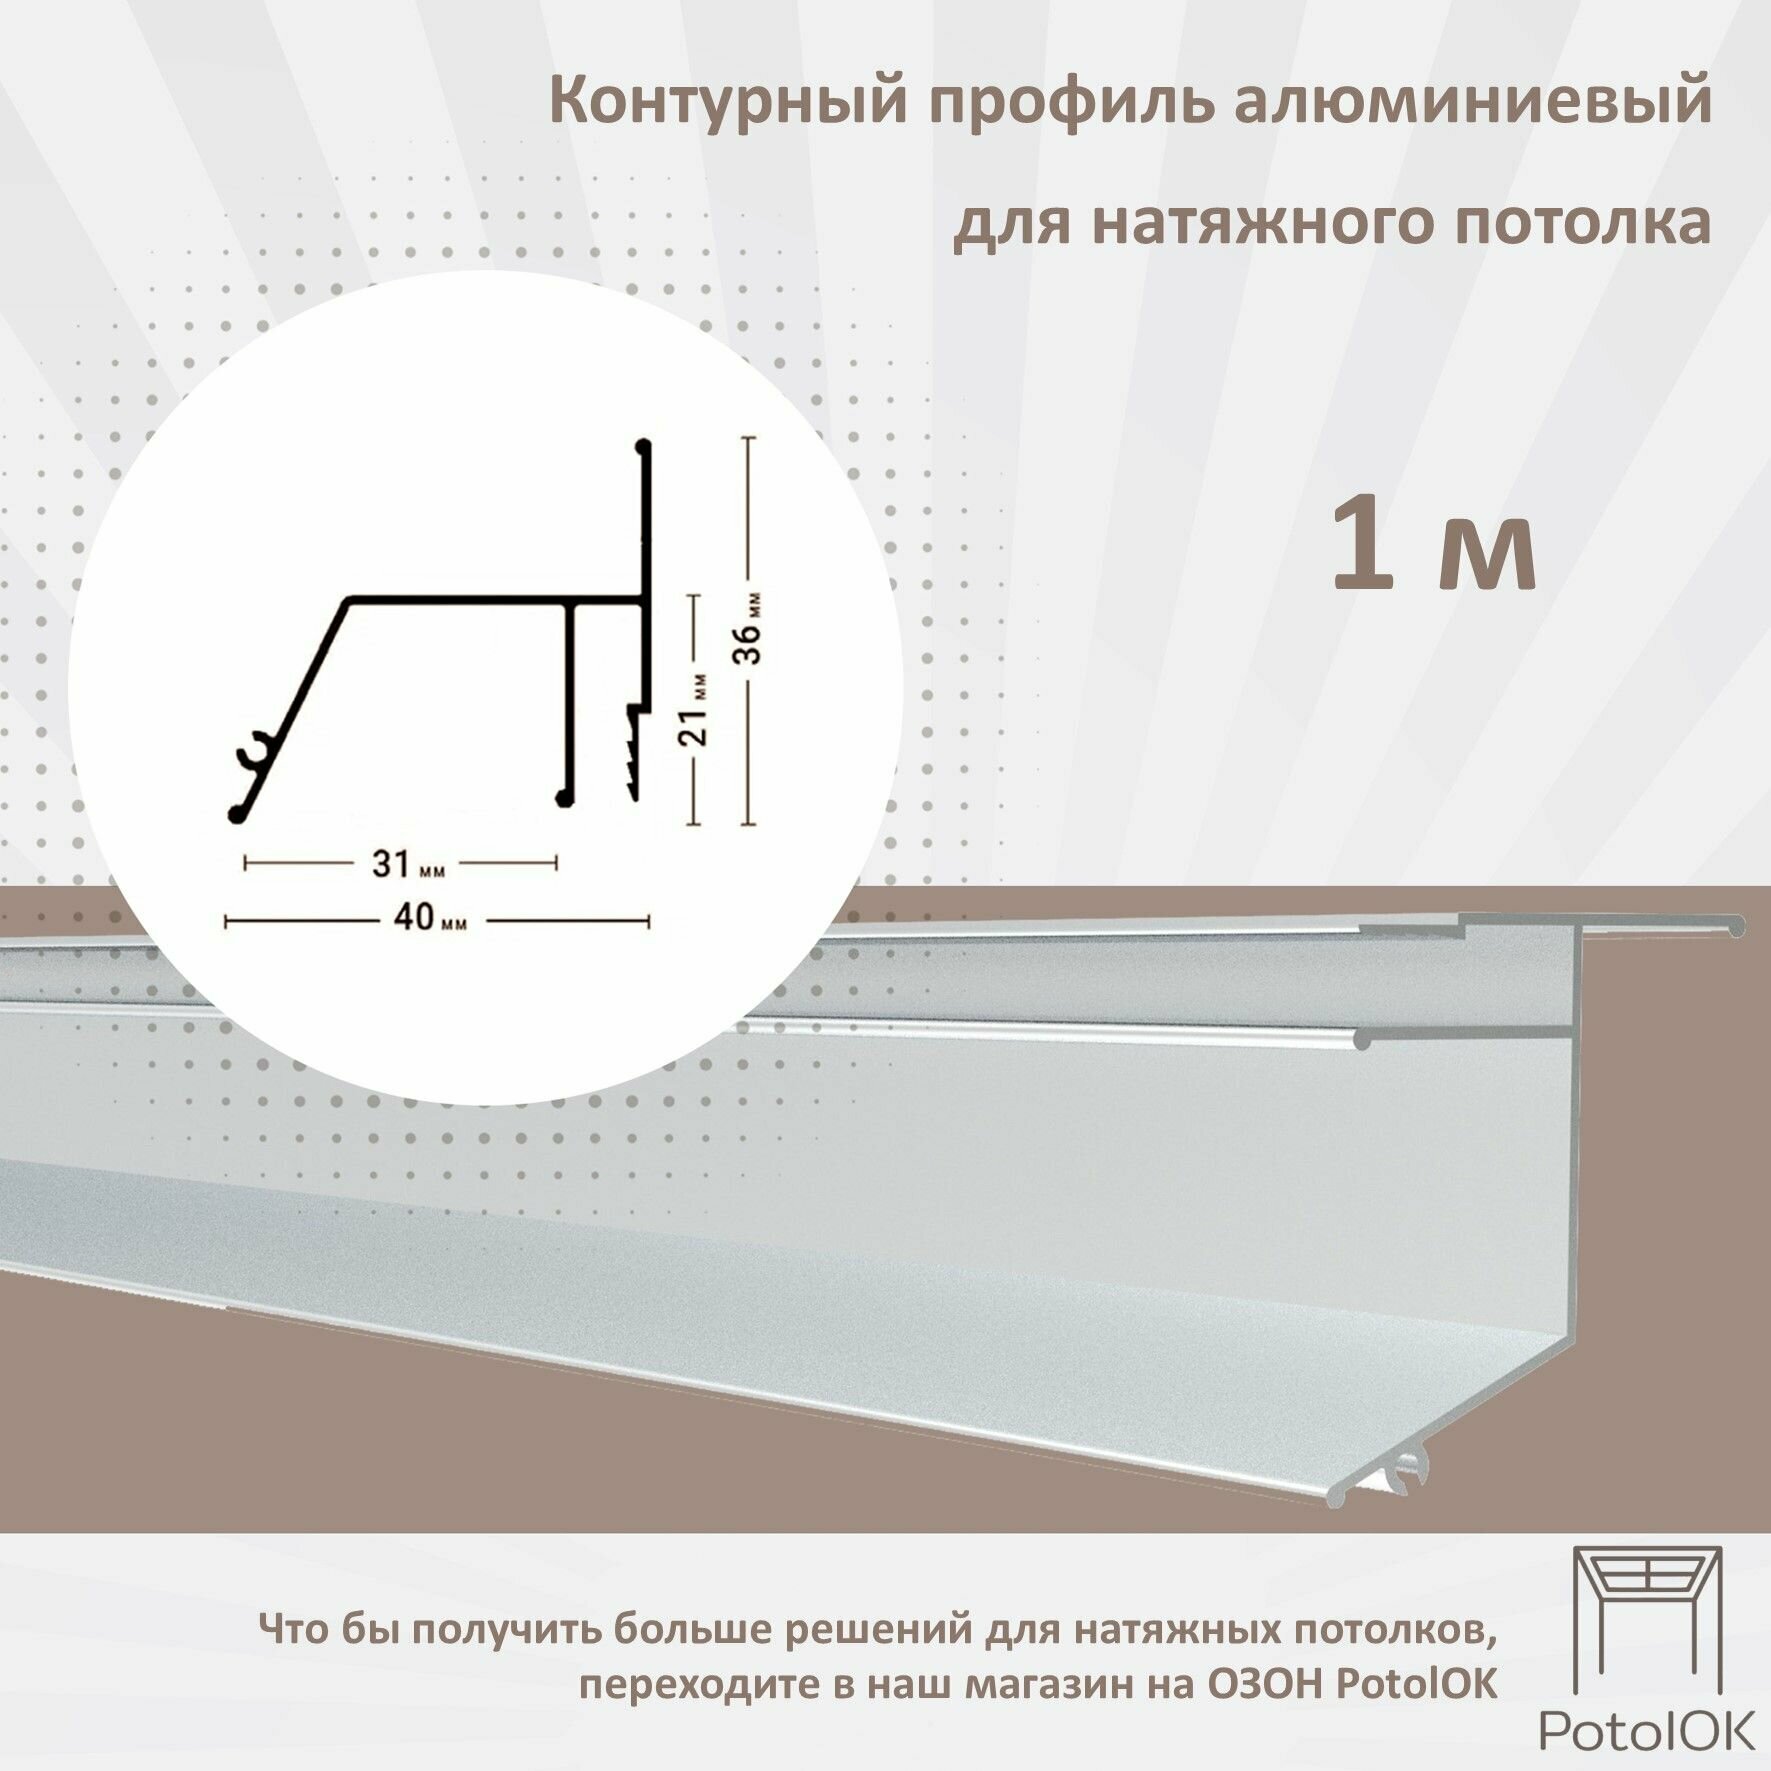 Контурный профиль алюминиевый для натяжного потолка - 1м 1шт